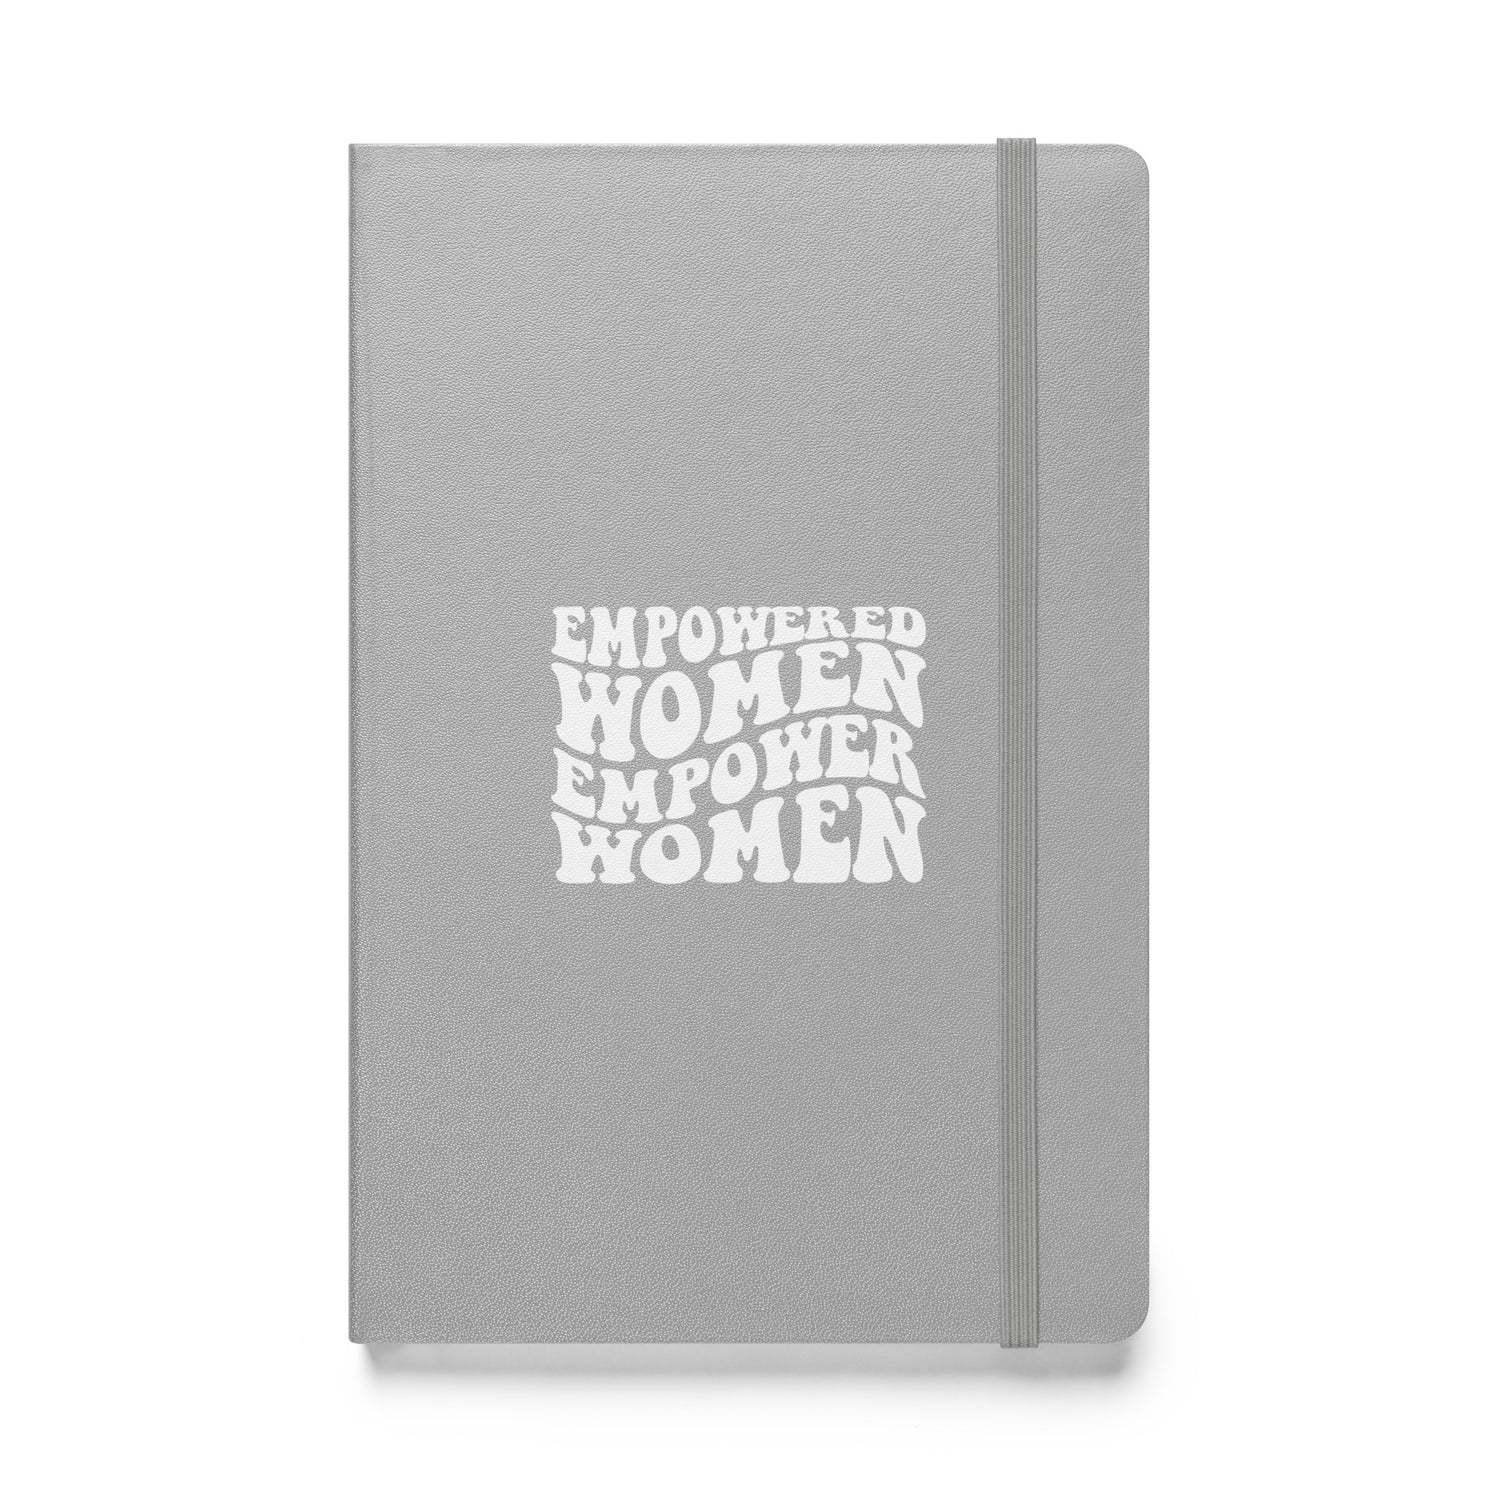 Empowered Women - Hardcover bound notebook